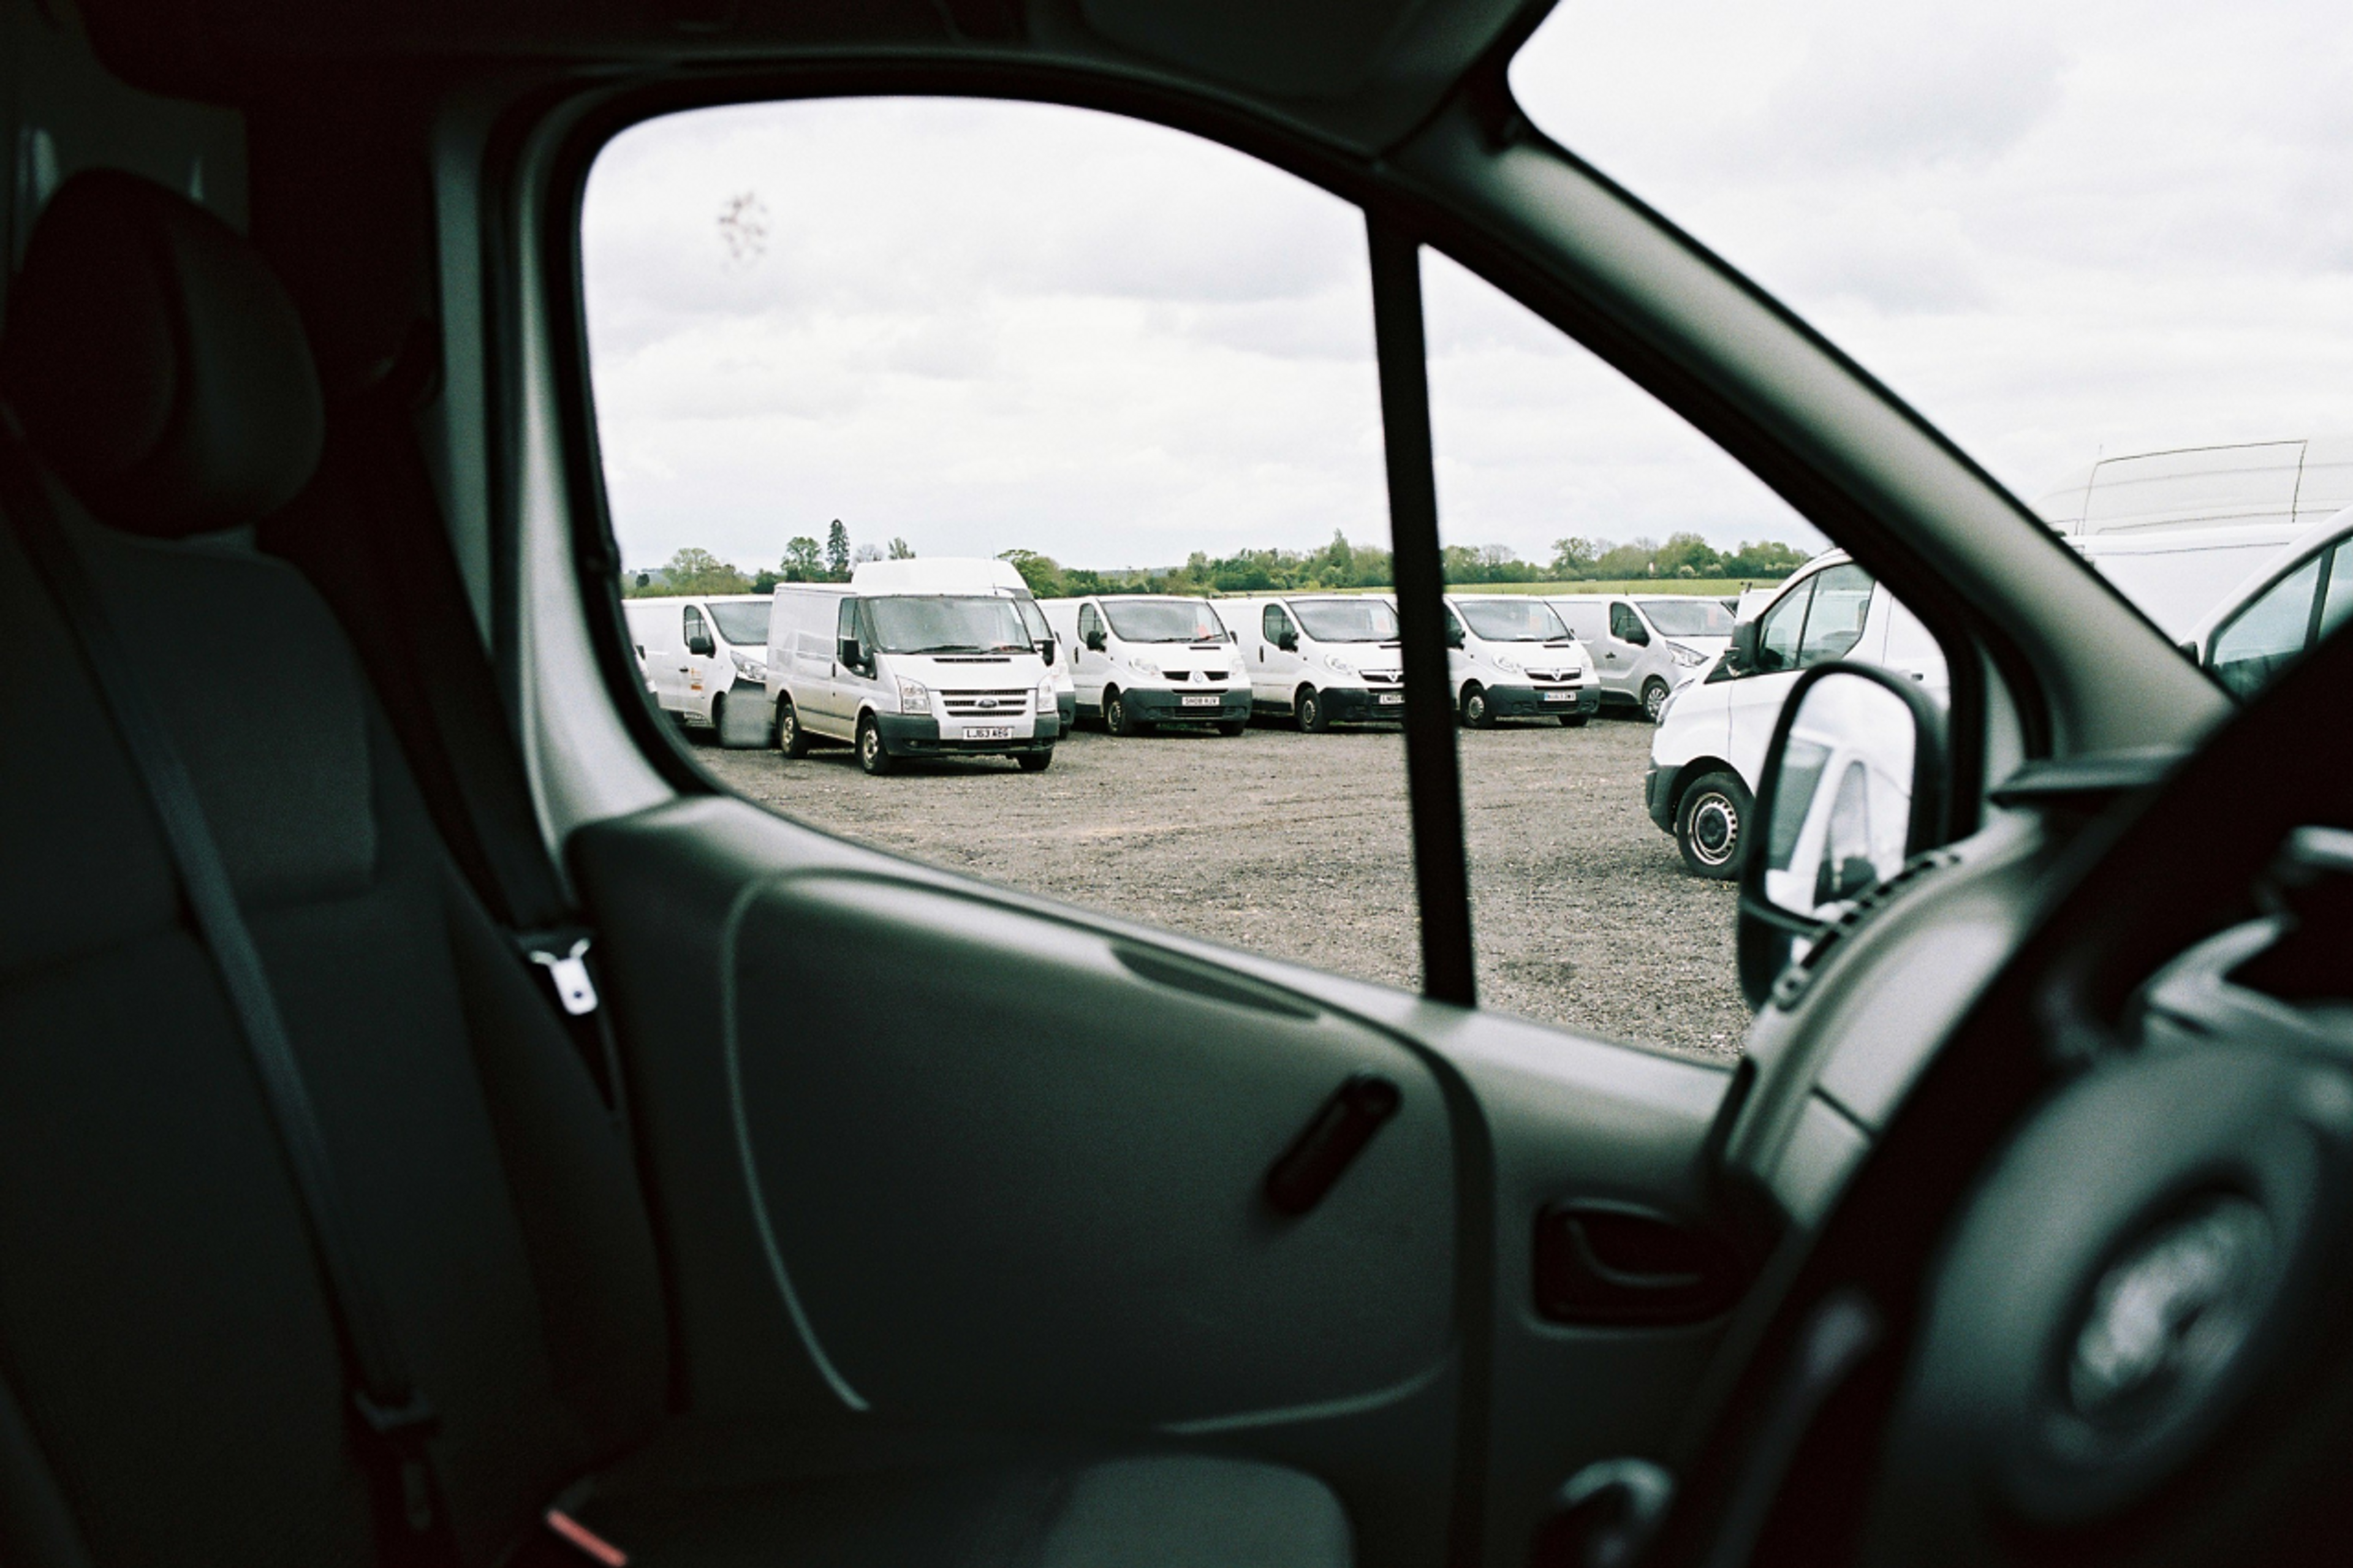 Fleet of parked white vans